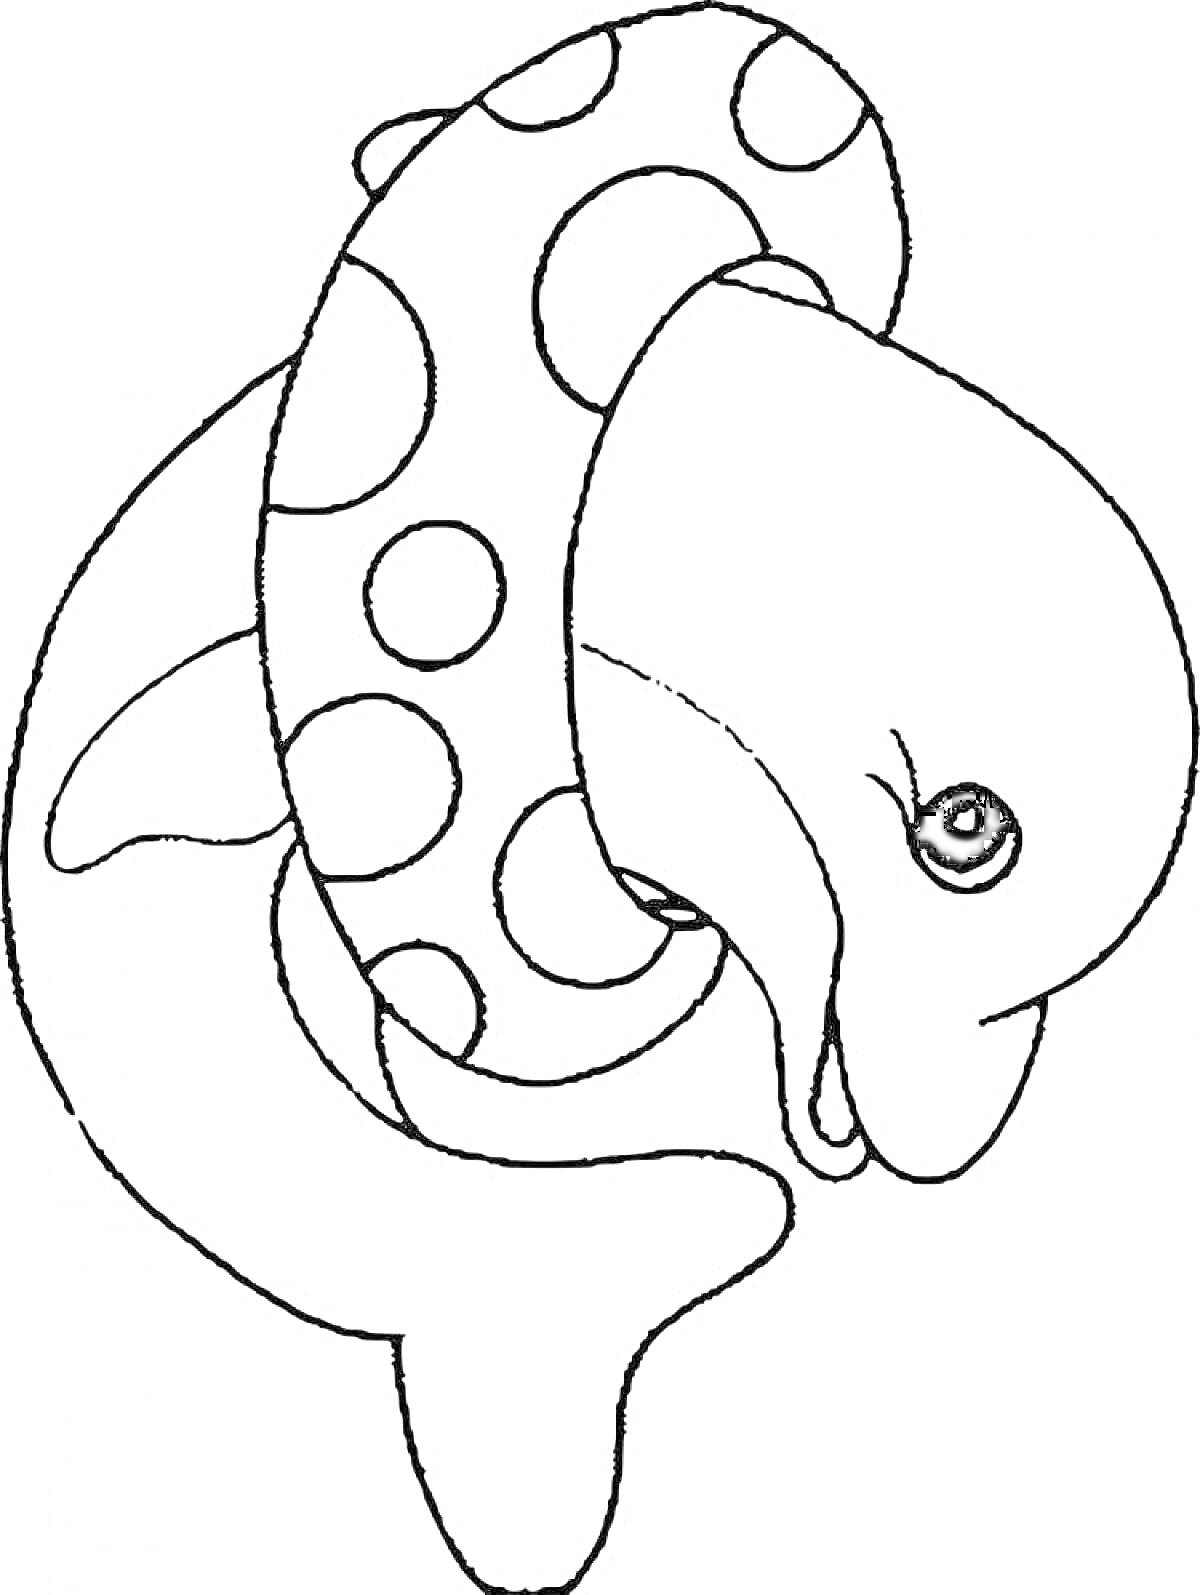 Раскраска Дельфин с кругом для плавания